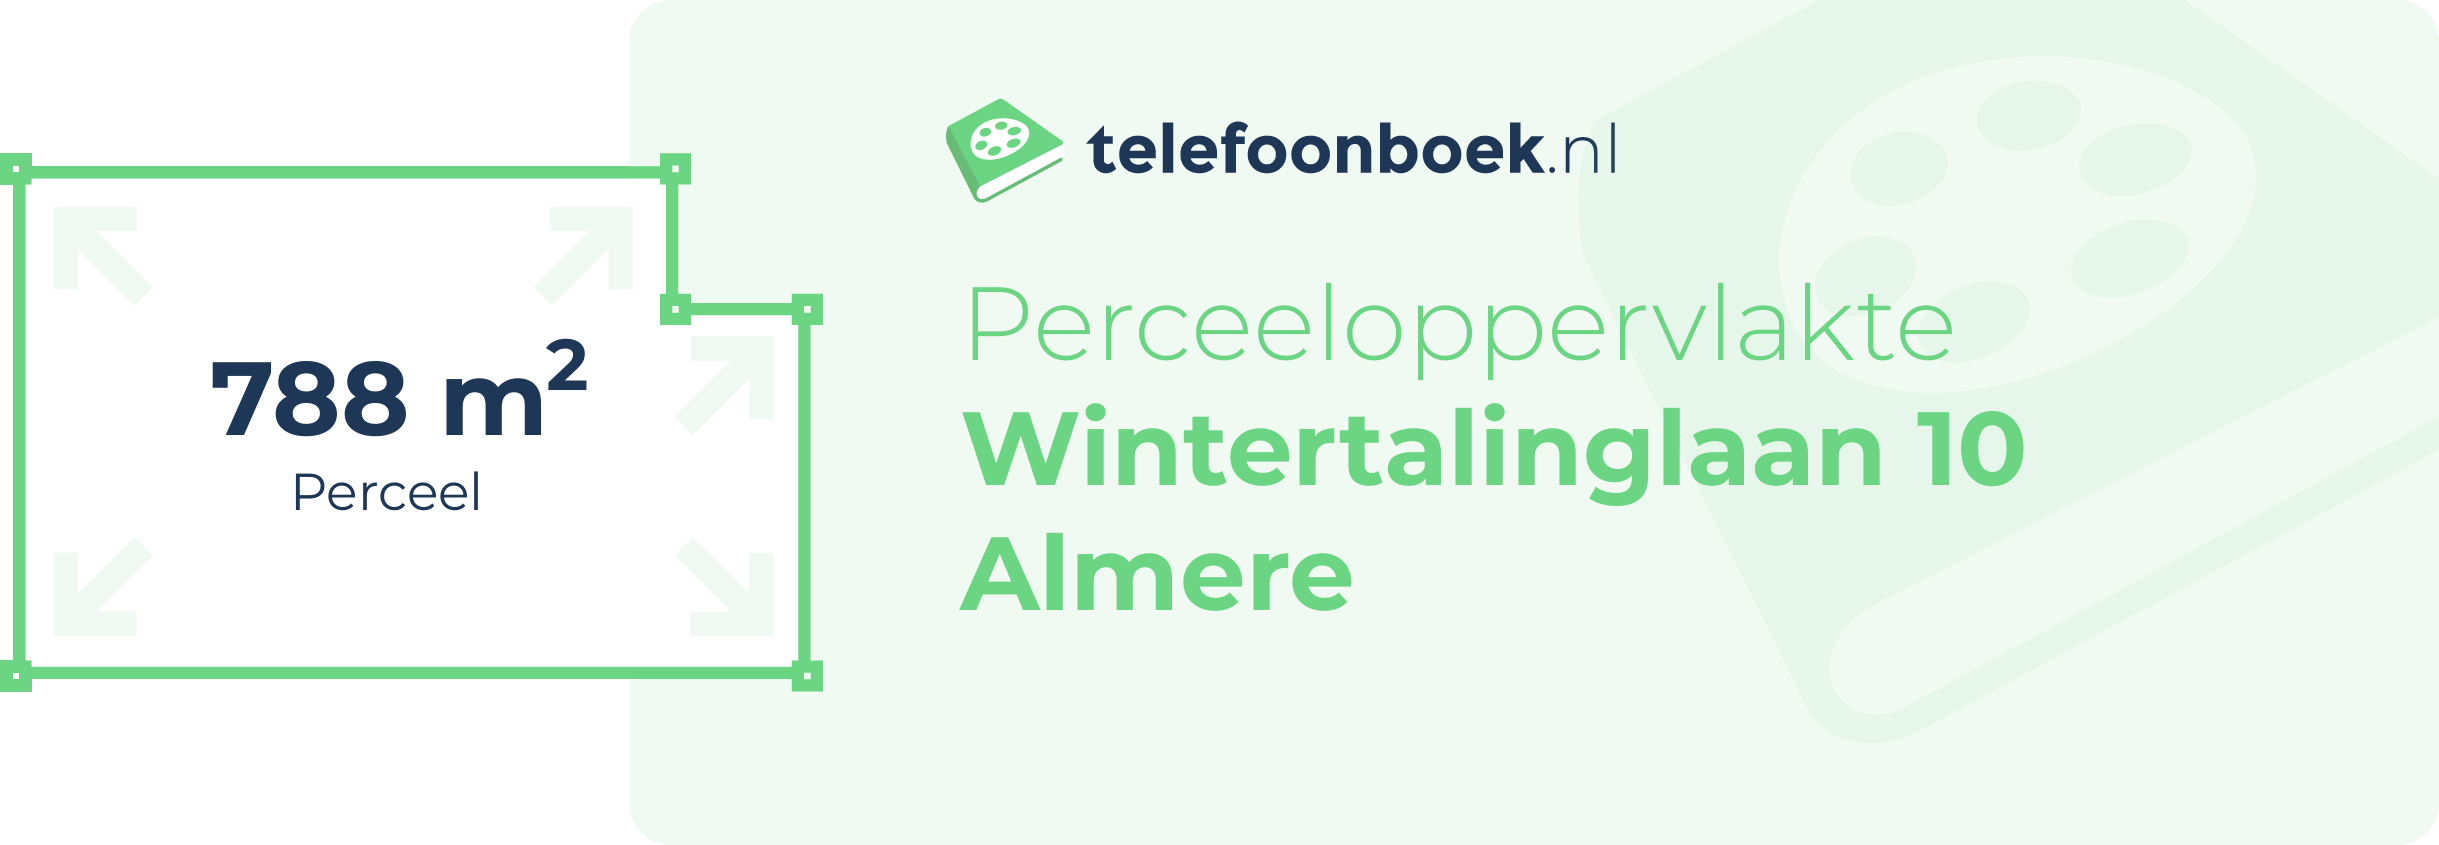 Perceeloppervlakte Wintertalinglaan 10 Almere